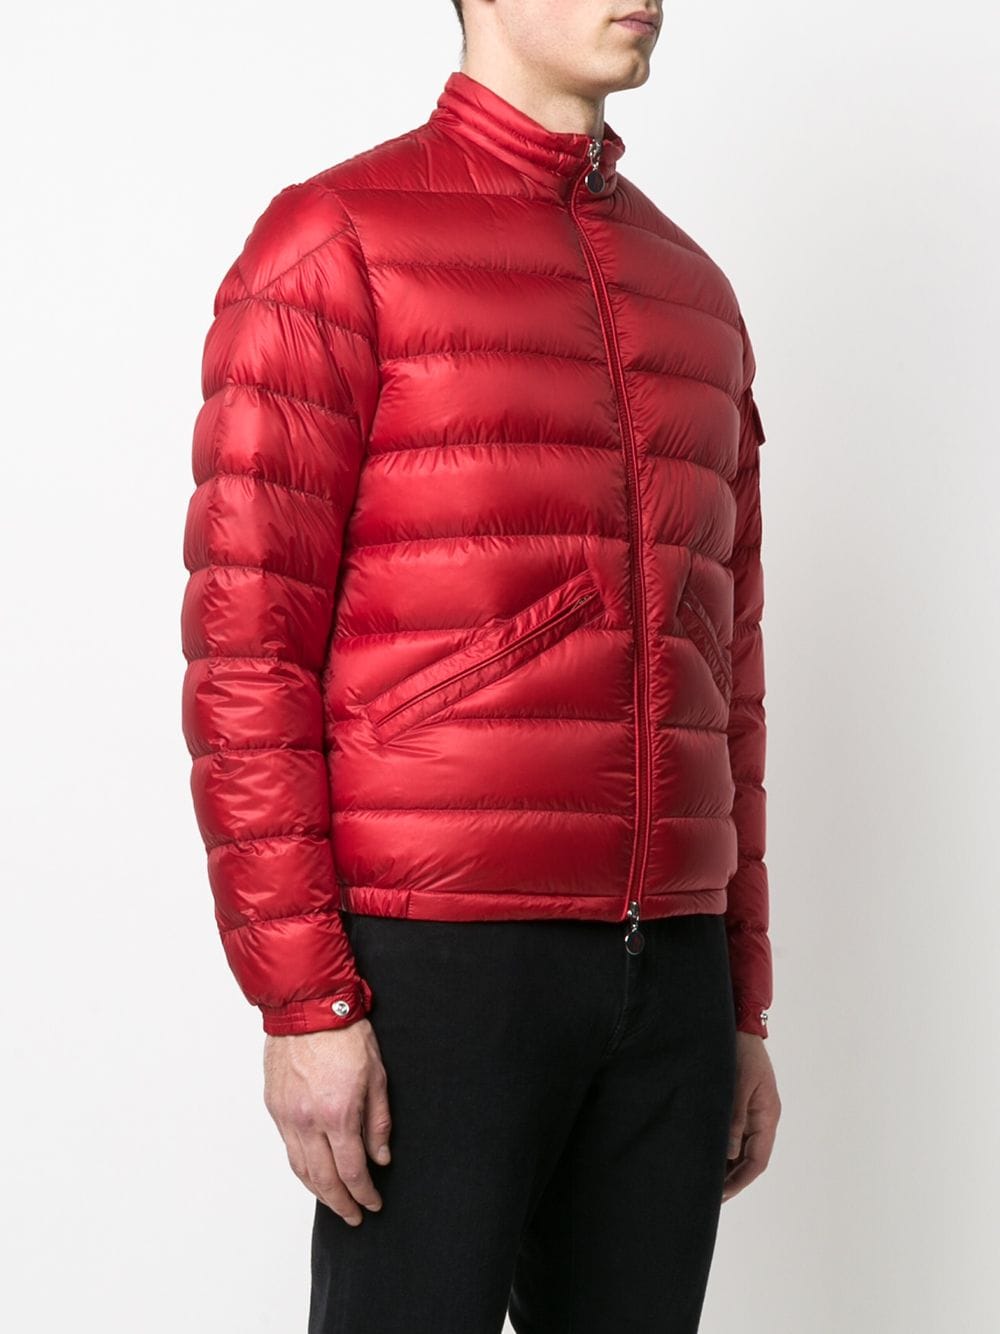 MONCLER Agay Giubbotto Padded Jacket Red - MAISONDEFASHION.COM